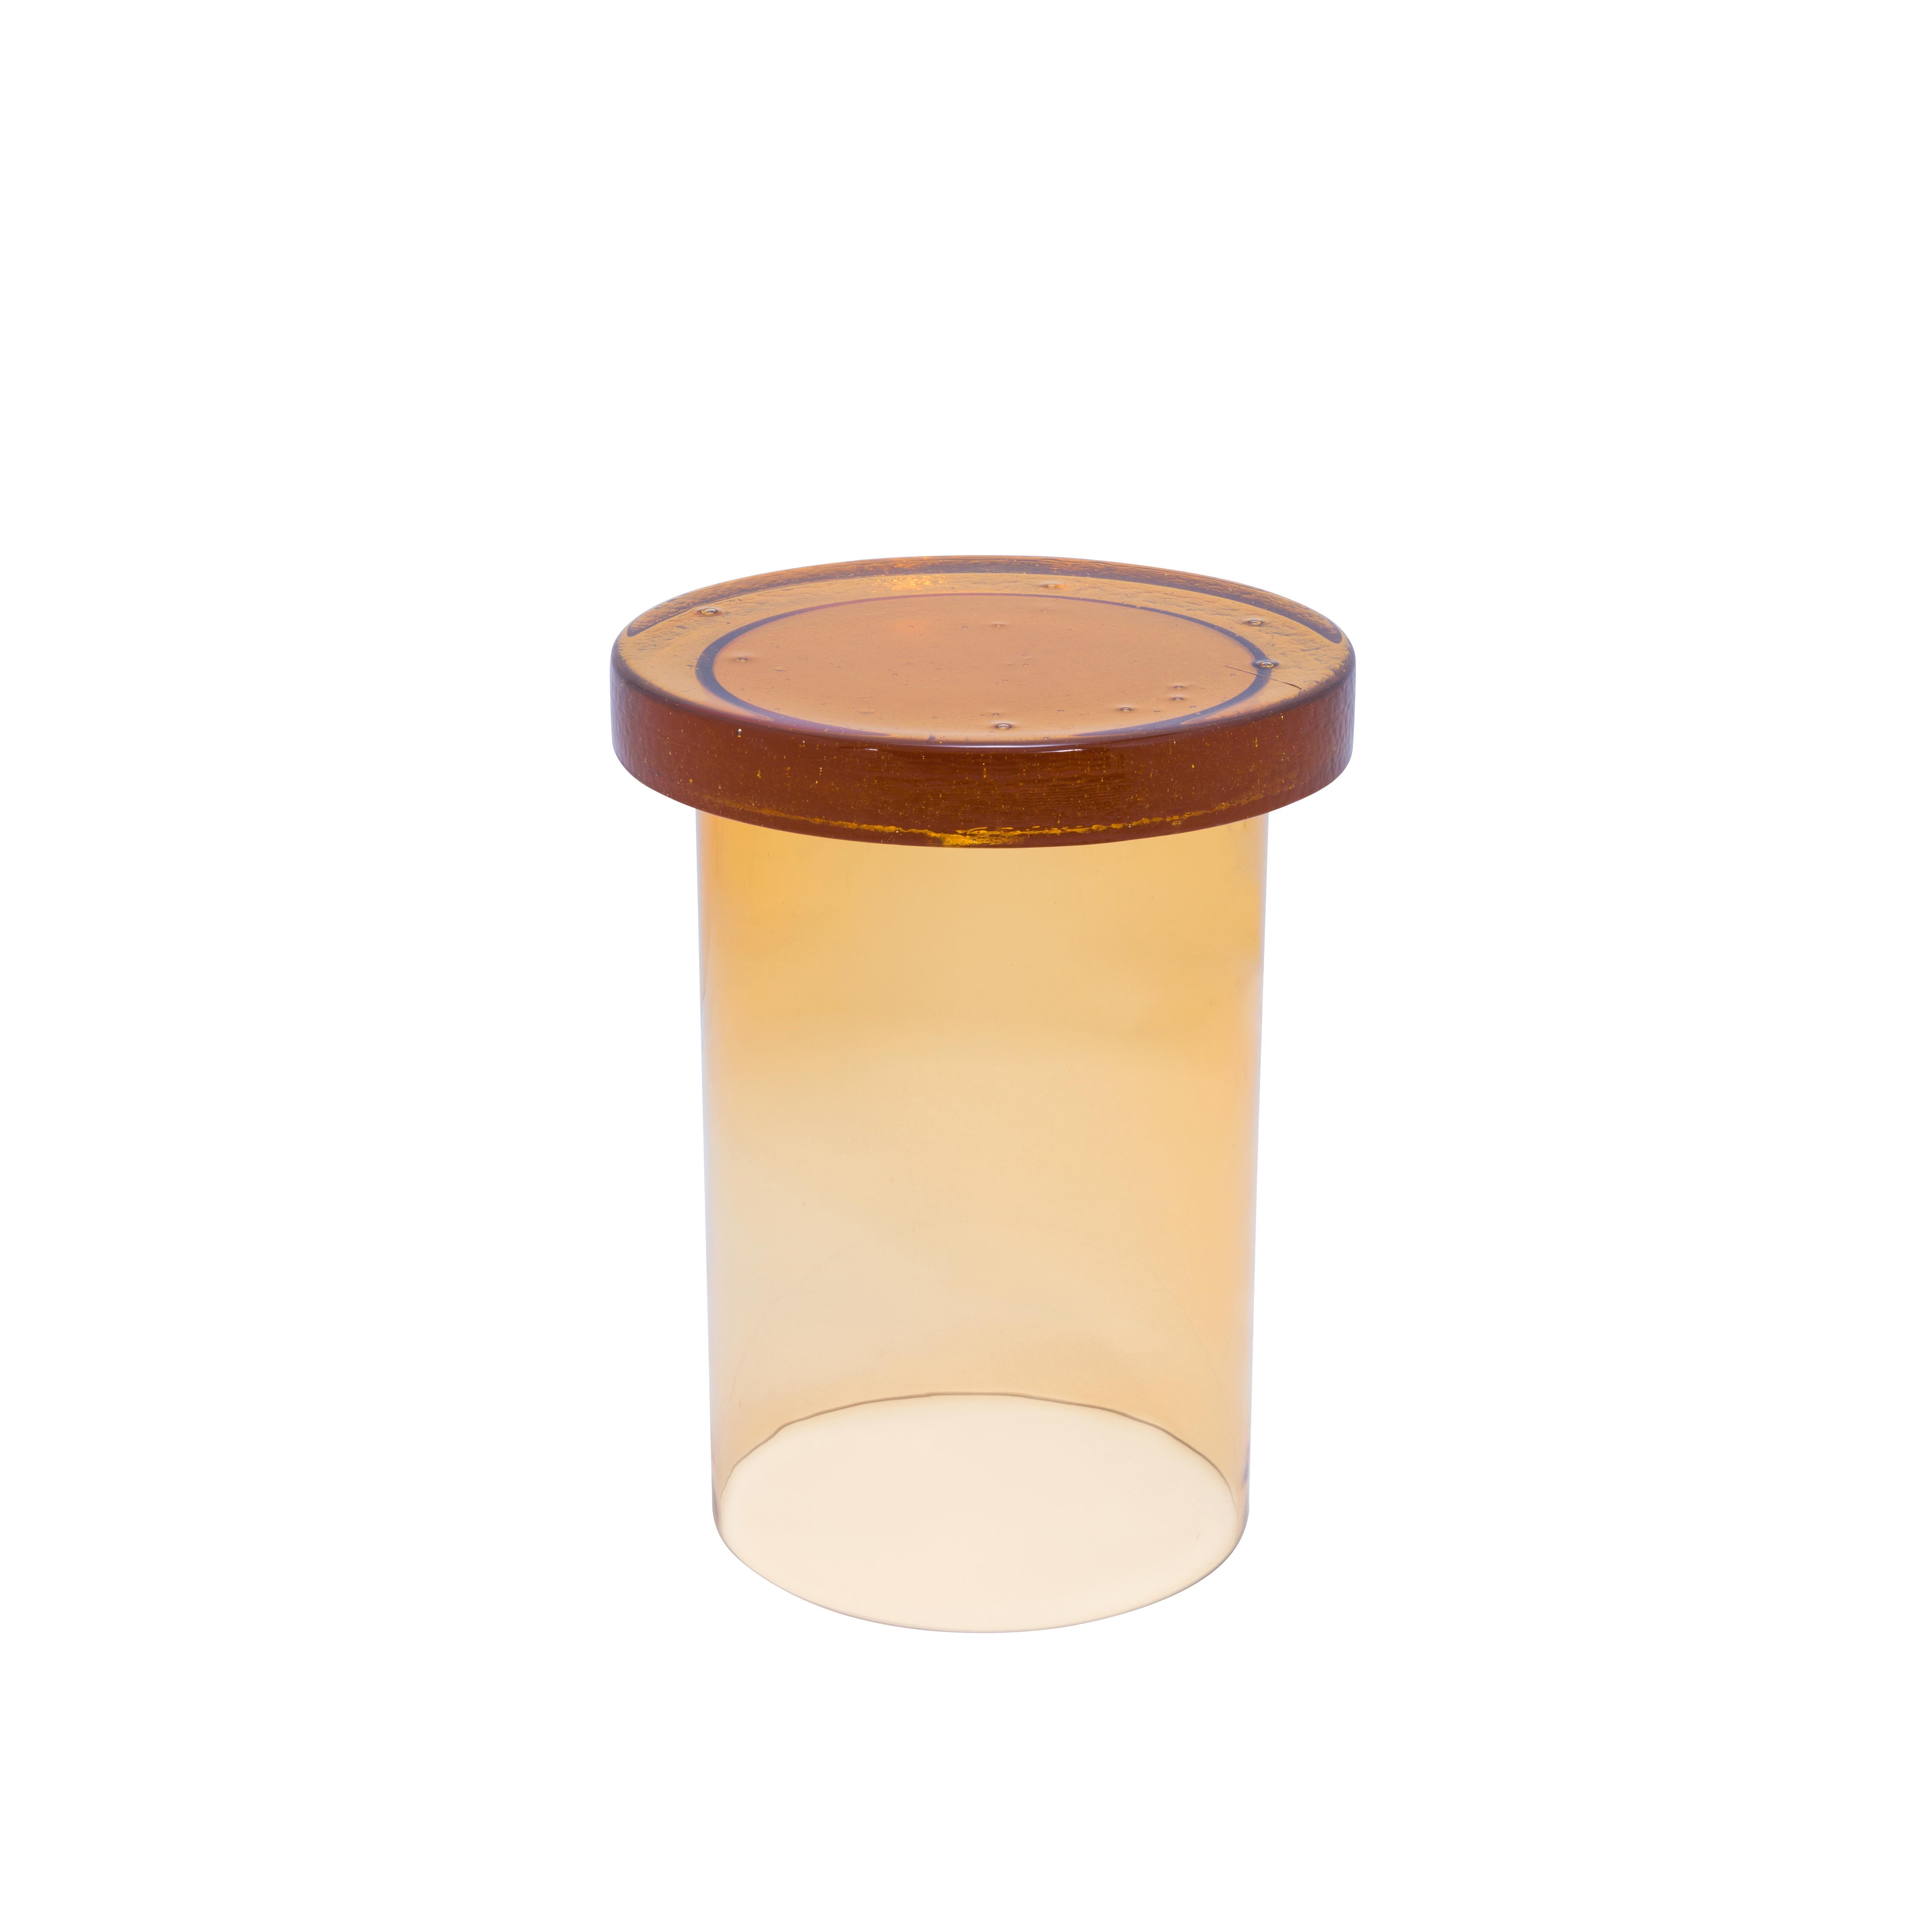 Table d'appoint Alwa Three Amber de Pulpo
Dimensions : D 38 x H 44 cm
MATERIAL : verre moulé et soufflé à la main
**Disponible également en différentes couleurs.

En général, le verre est considéré comme un matériau léger aux arêtes vives. En